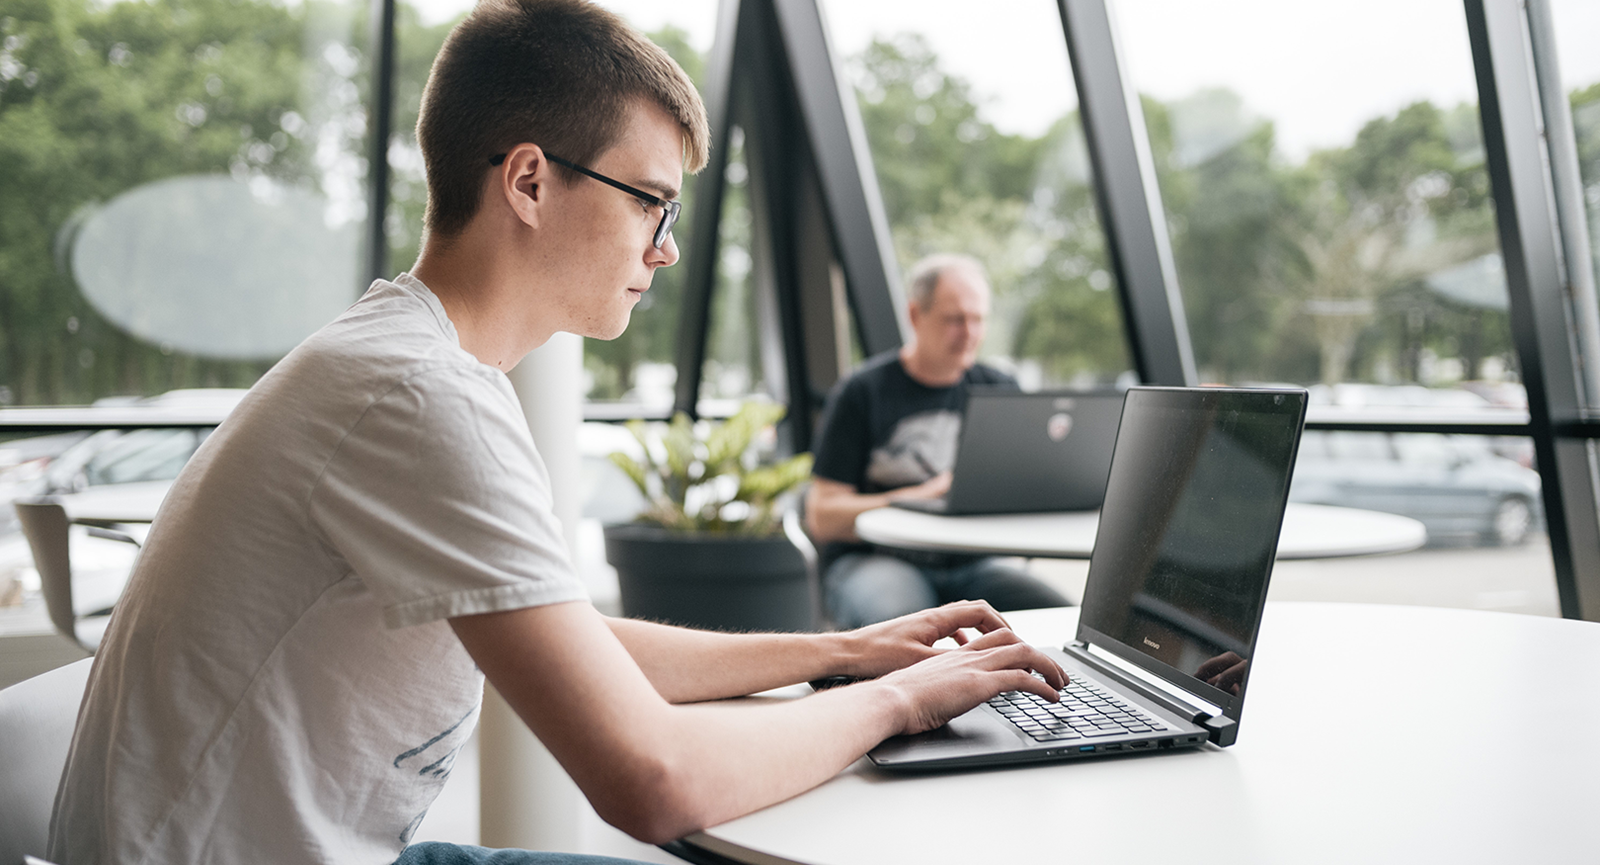 Ung mand i hvid t-shirt og mørke briller sidder ved et bord og arbejder koncentreret på en bærbar computer.